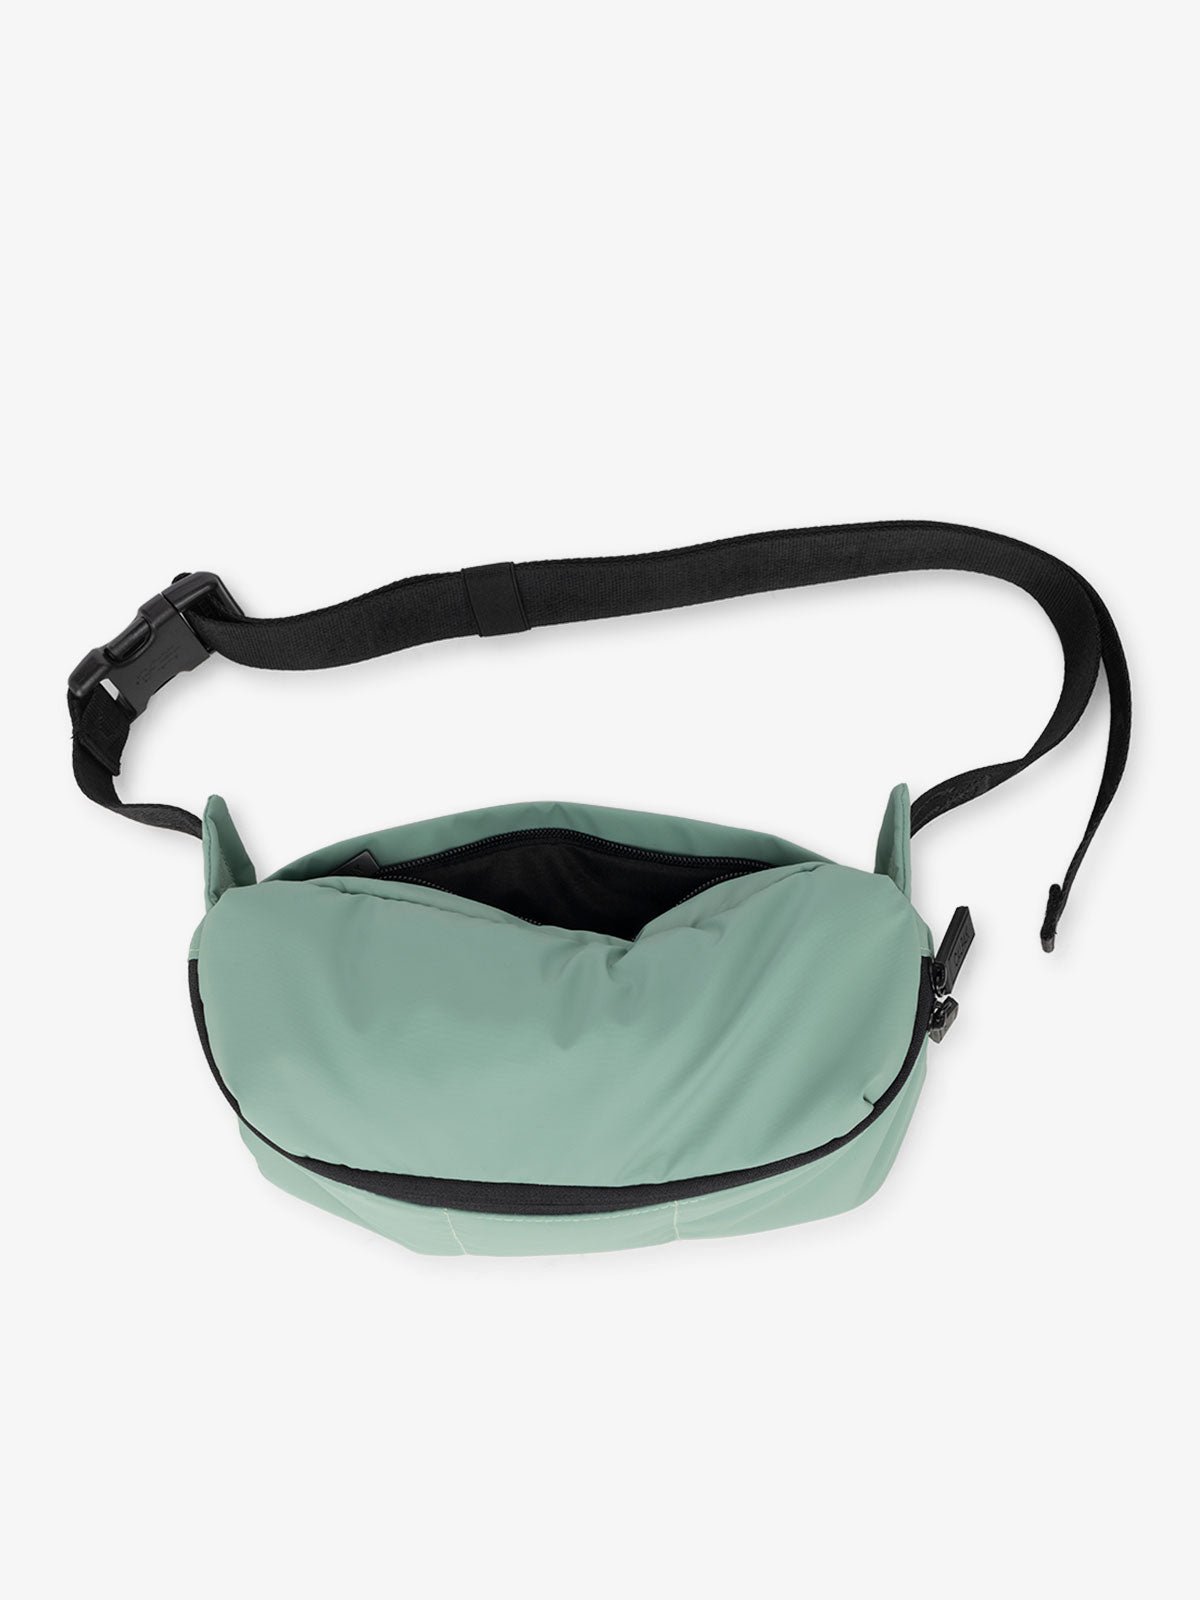 CALPAK Luka Belt Bag with adjustable strap and back pocket in sage